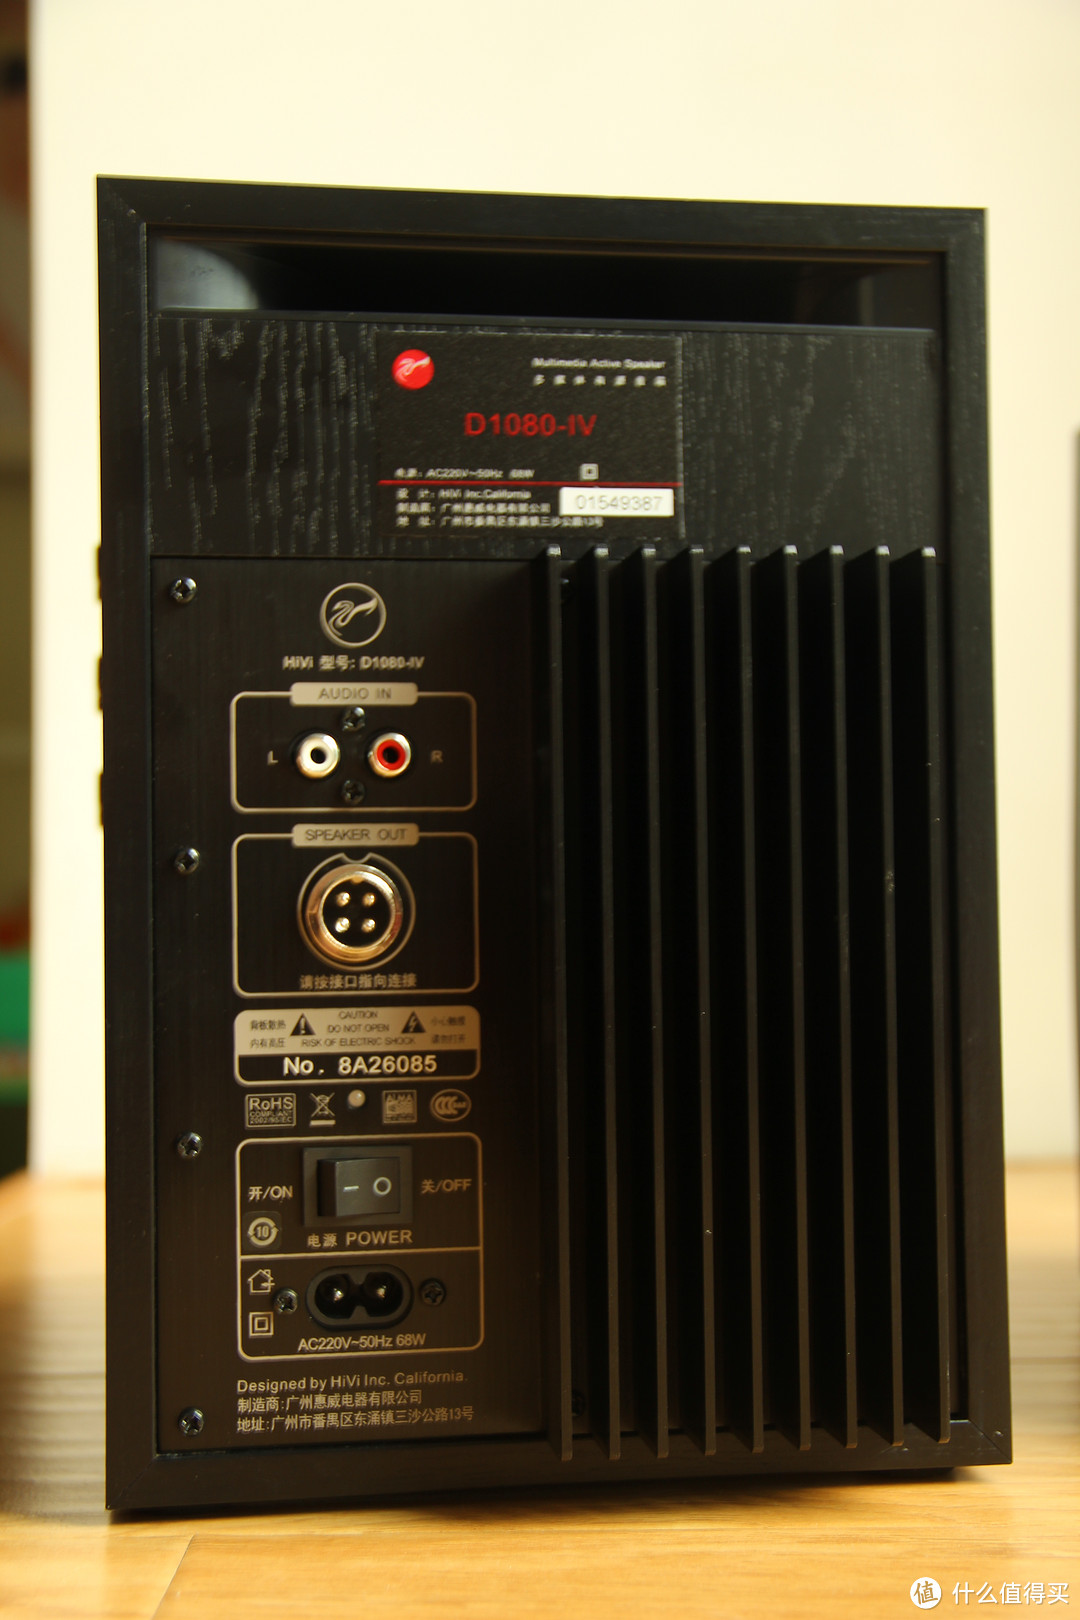 HiVi 惠威 D1080-IV 2.0声道多媒体音箱，新鲜的~刚出炉哦~~大神求指教~~